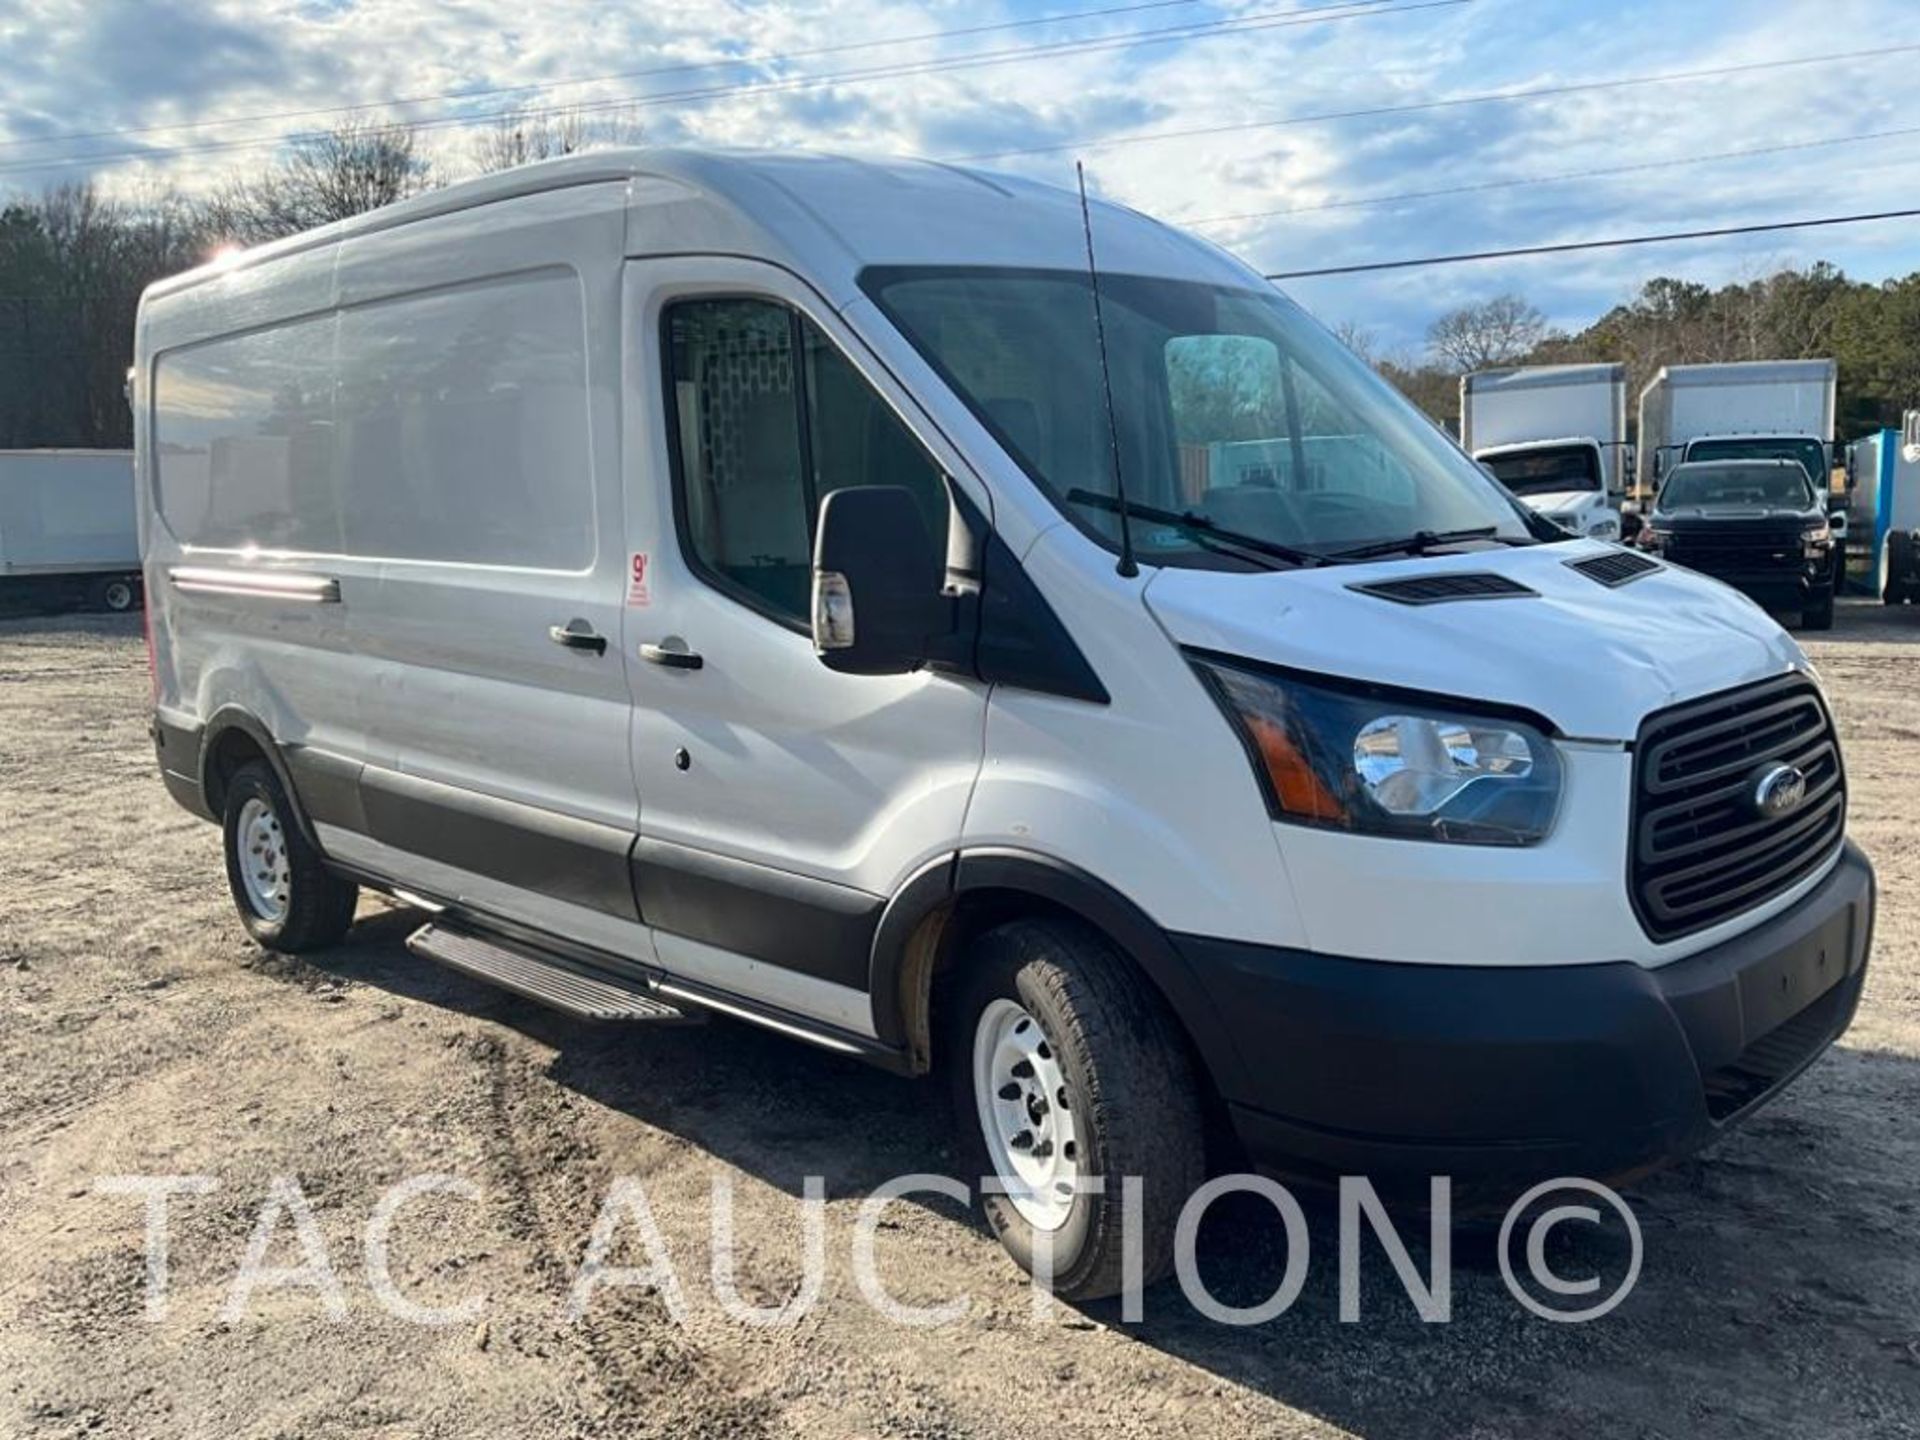 2019 Ford Transit 150 Cargo Van - Image 7 of 46